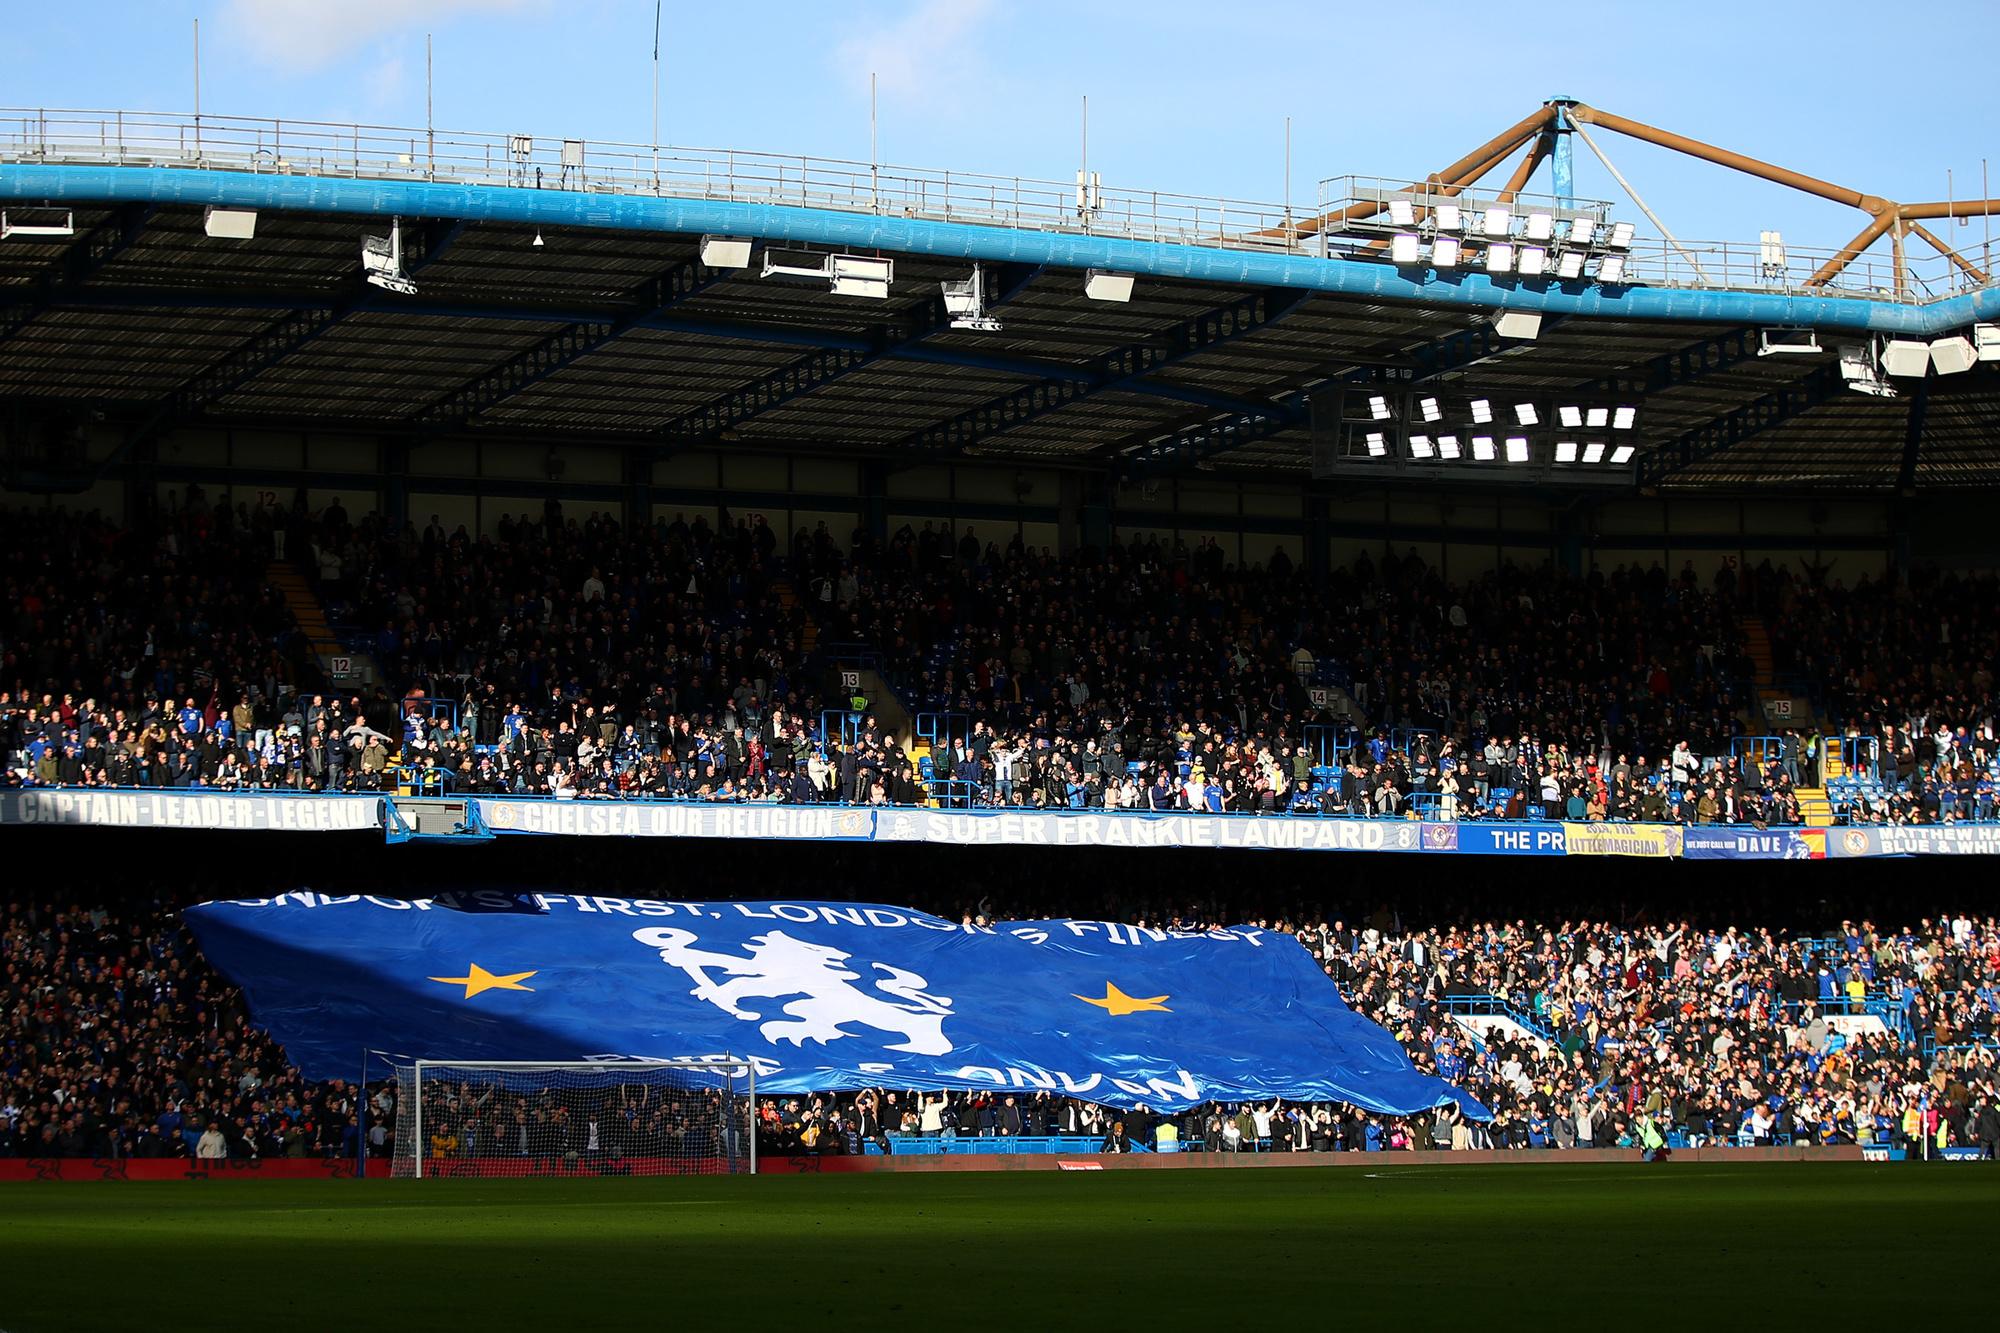 Zien we binnenkort heel wat lege zitjes op Stamford Bridge?